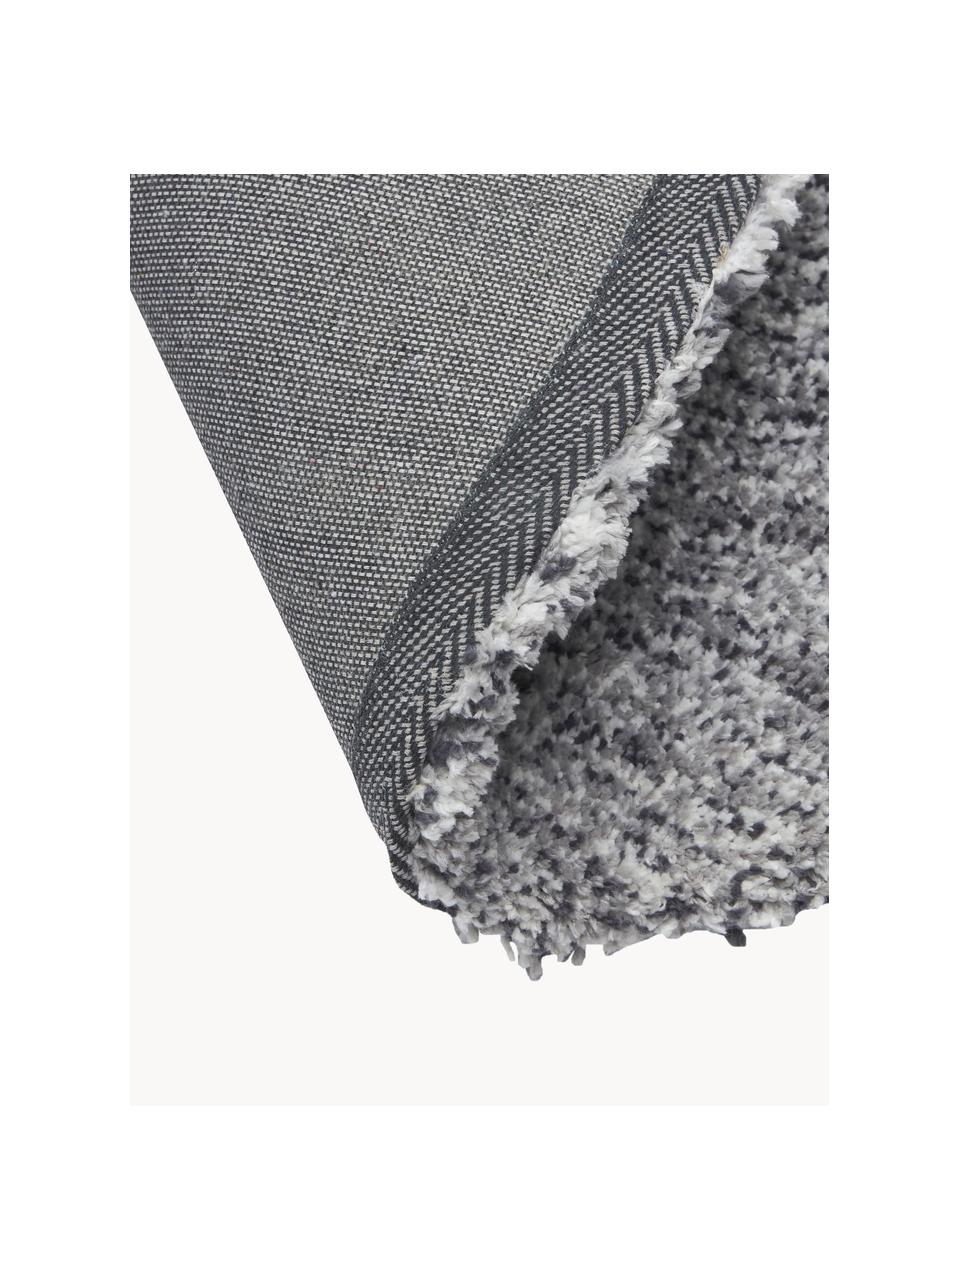 Flauschiger runder Hochflor-Teppich Marsha, Rückseite: 55 % Polyester, 45 % Baum, Grau, Ø 120 cm (Grösse S)